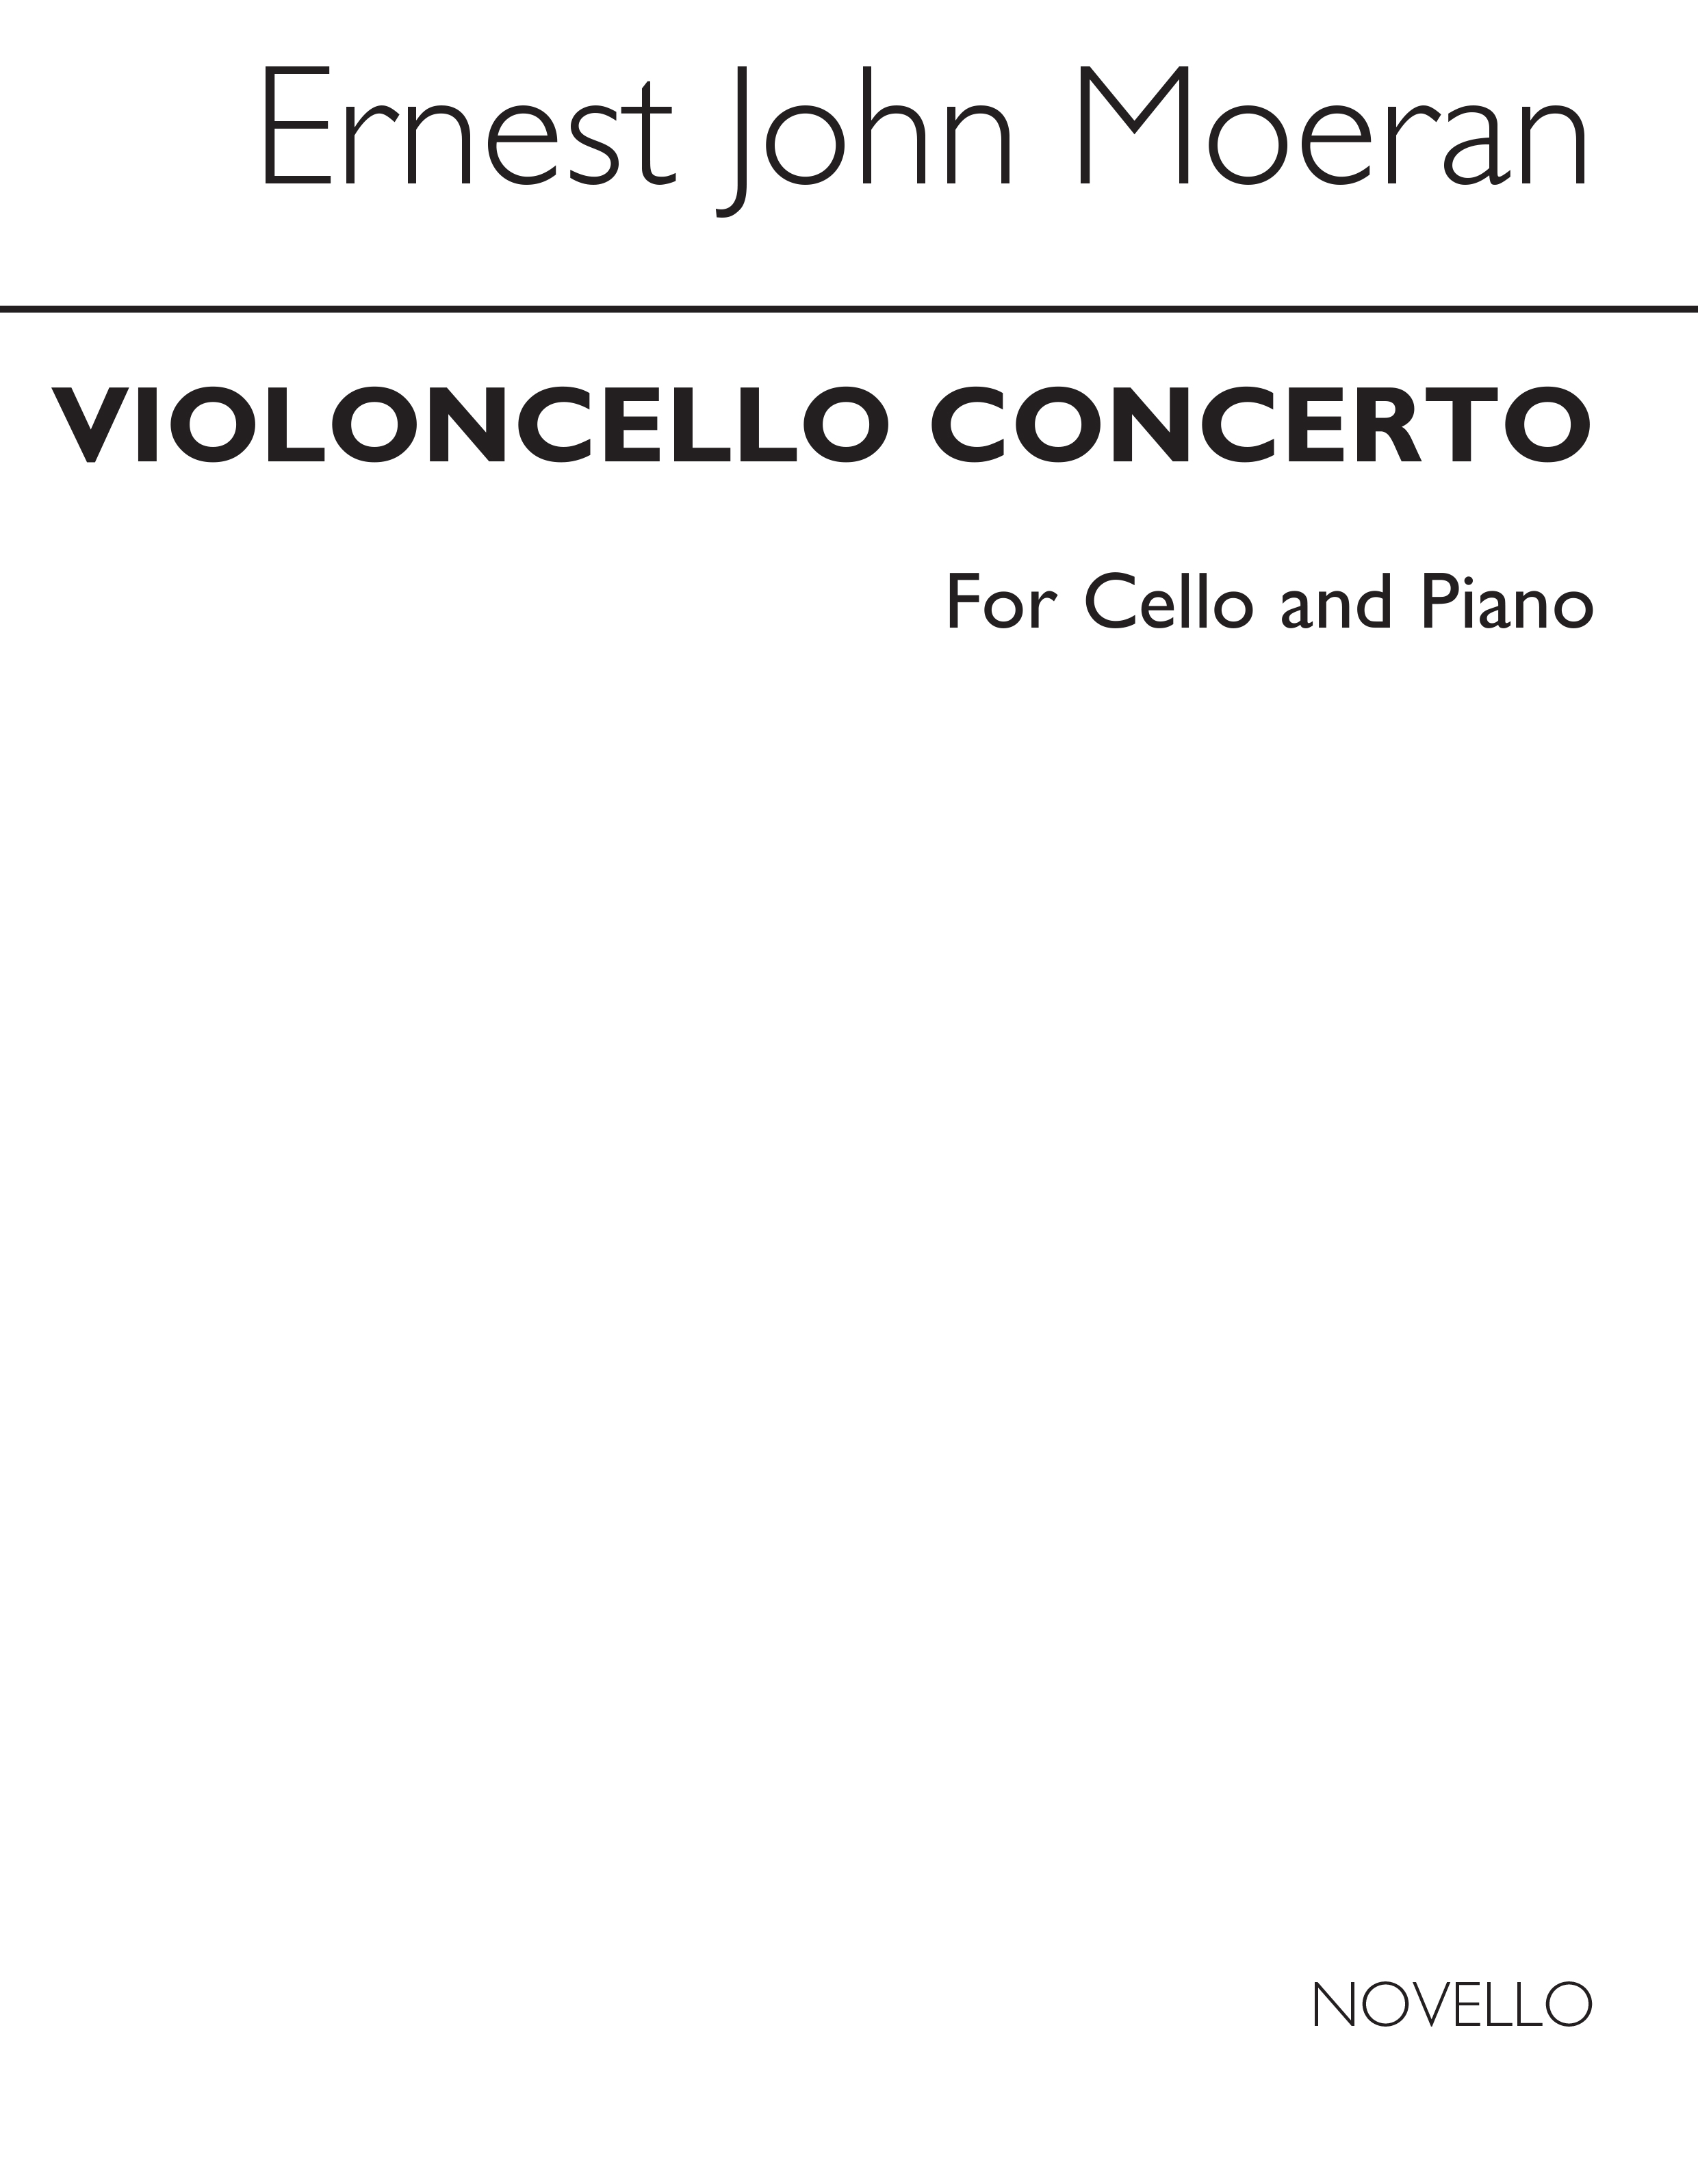 E.J. Moeran: Cello Concerto